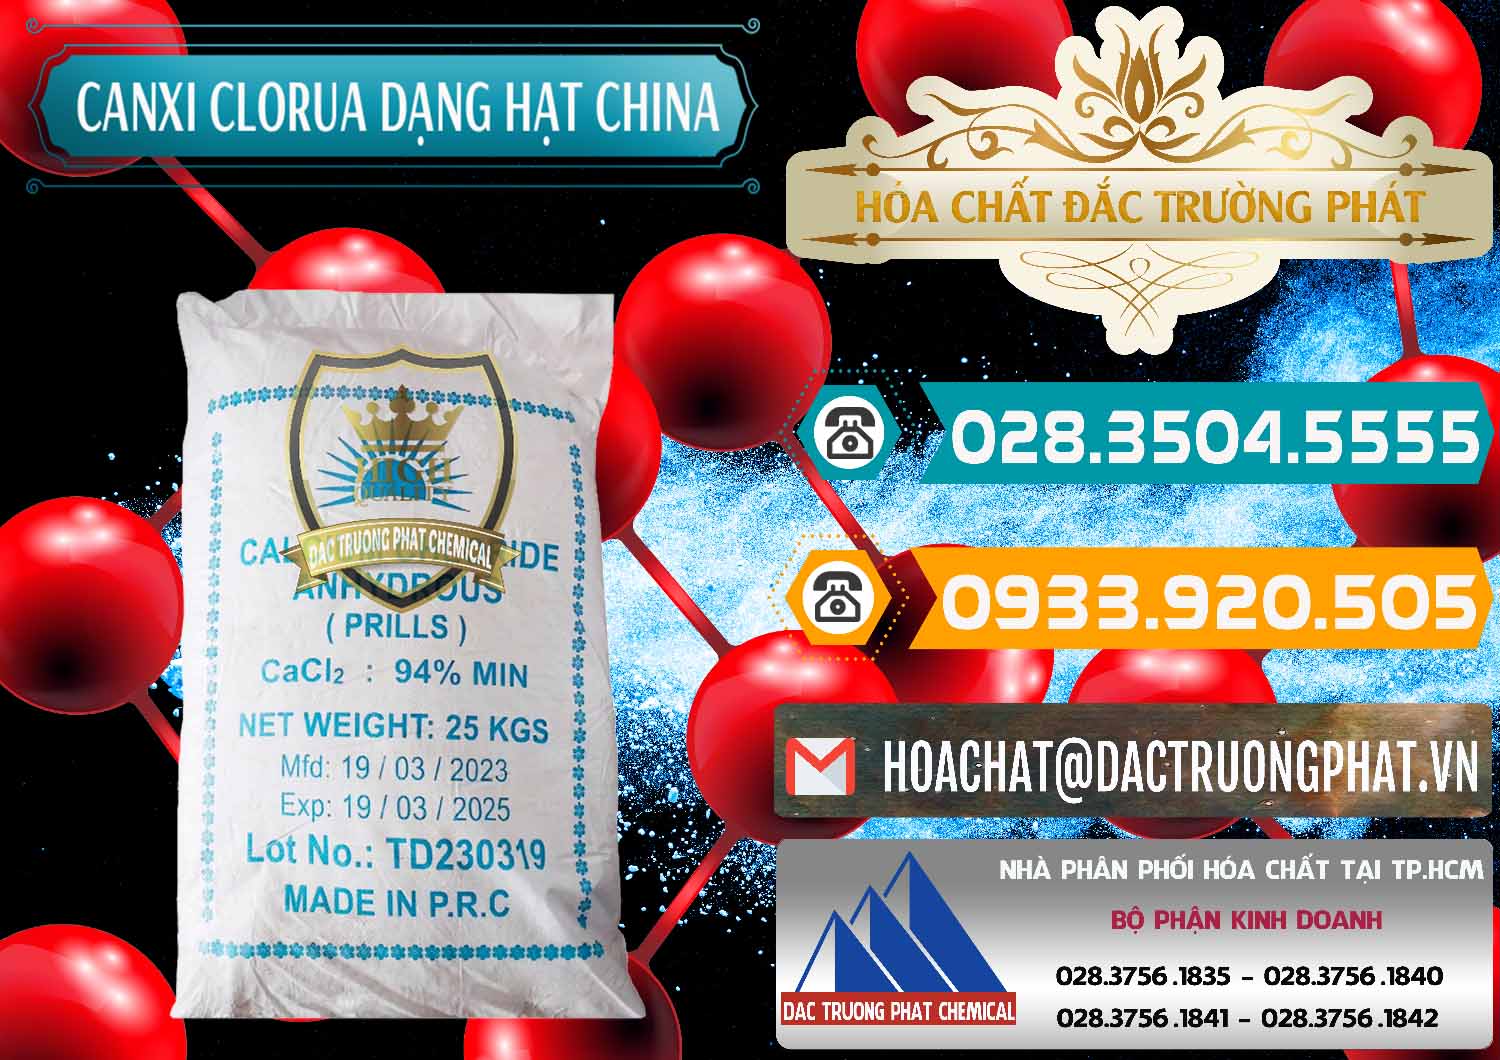 Nơi chuyên bán - cung ứng CaCl2 – Canxi Clorua 94% Dạng Hạt Trung Quốc China - 0373 - Đơn vị bán và cung cấp hóa chất tại TP.HCM - congtyhoachat.vn